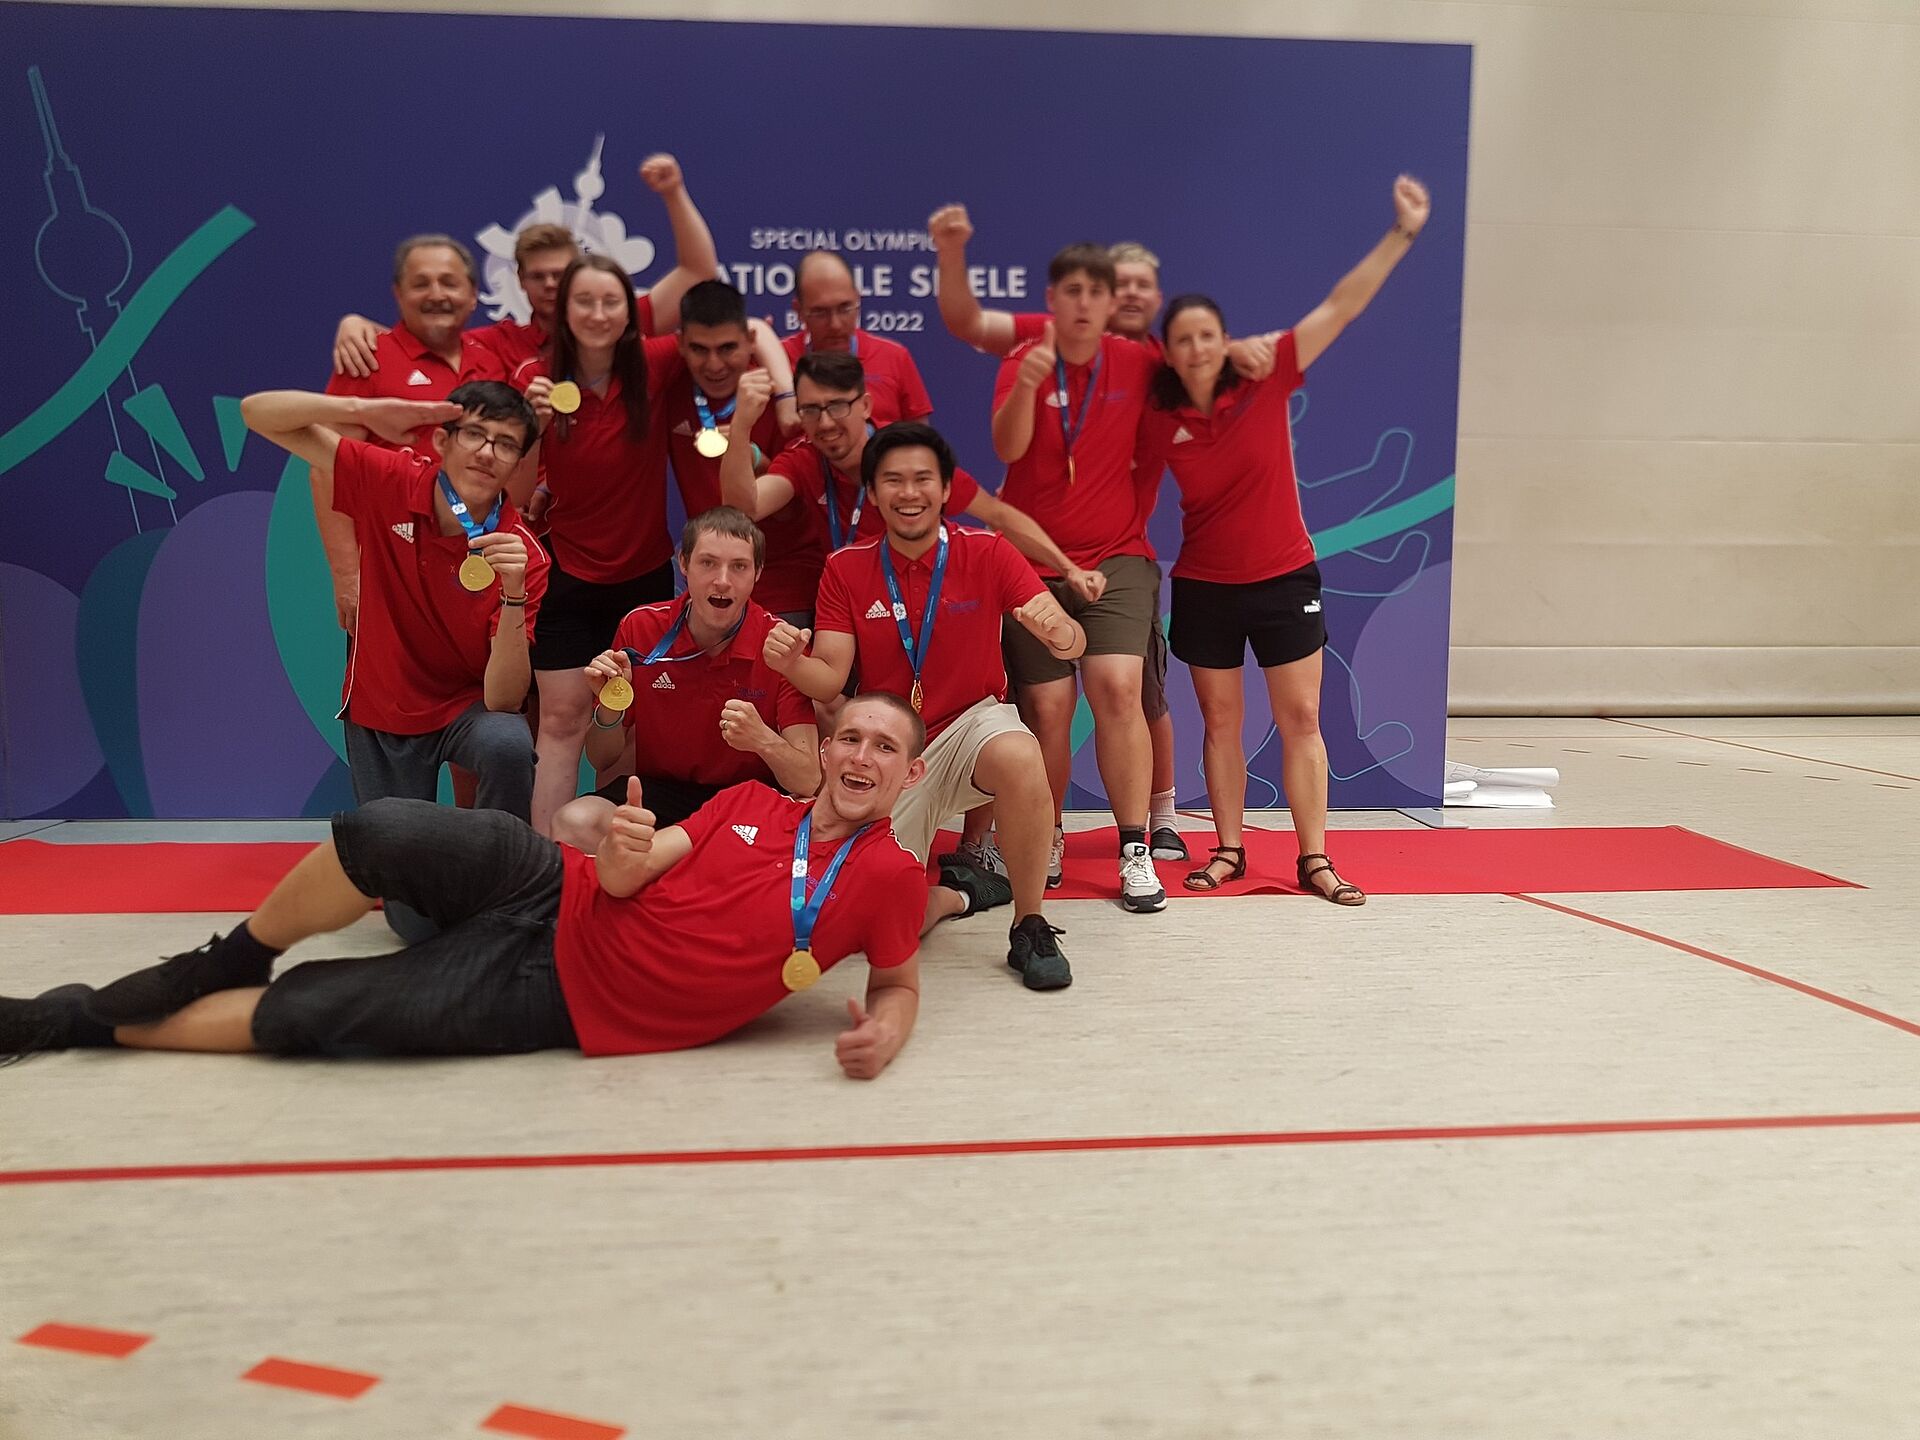 Siegreiche Handballmannschaft bei den Special Olympics